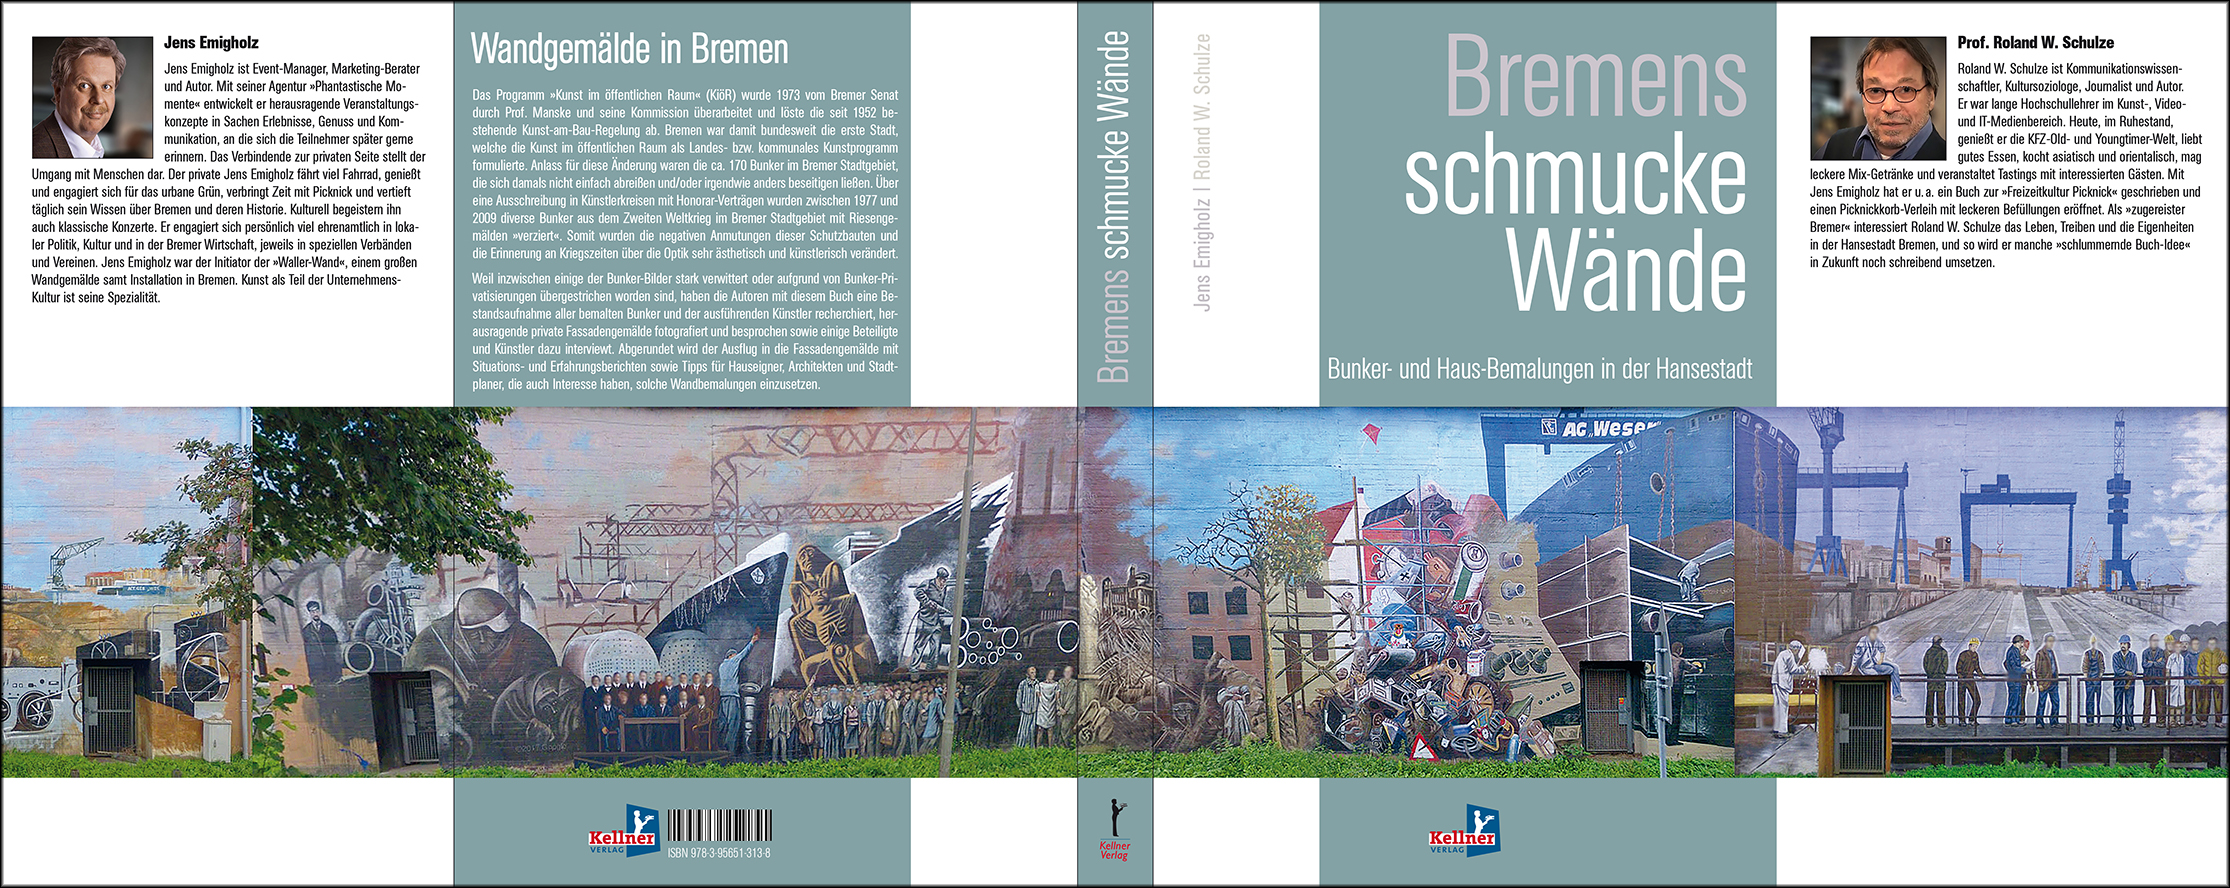 Unser Buch-Cover "Bremens schmucke Wände"